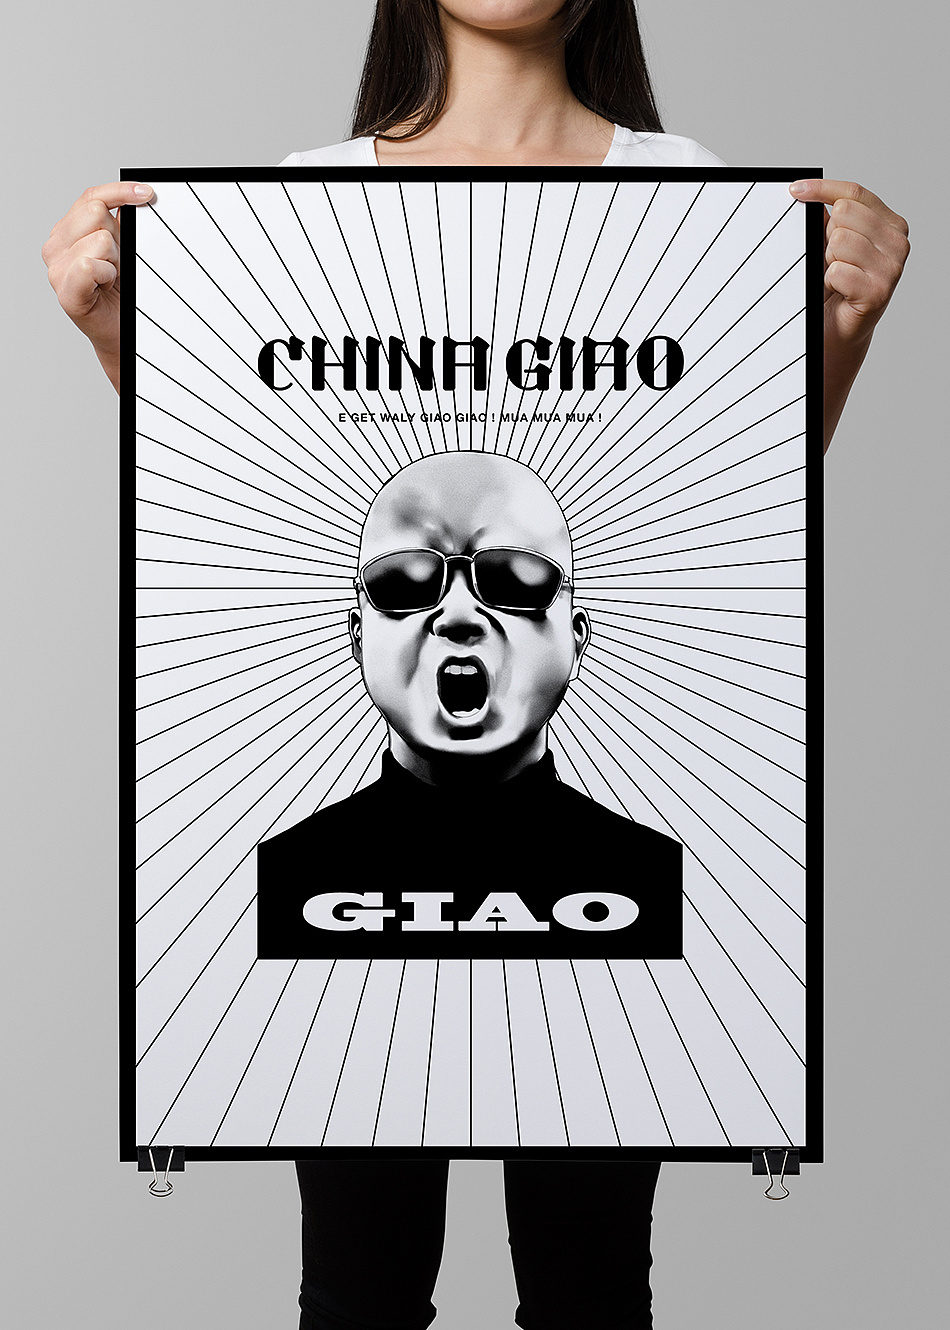 Giao哥首张中文说唱专辑《CHINA GIAO》设计